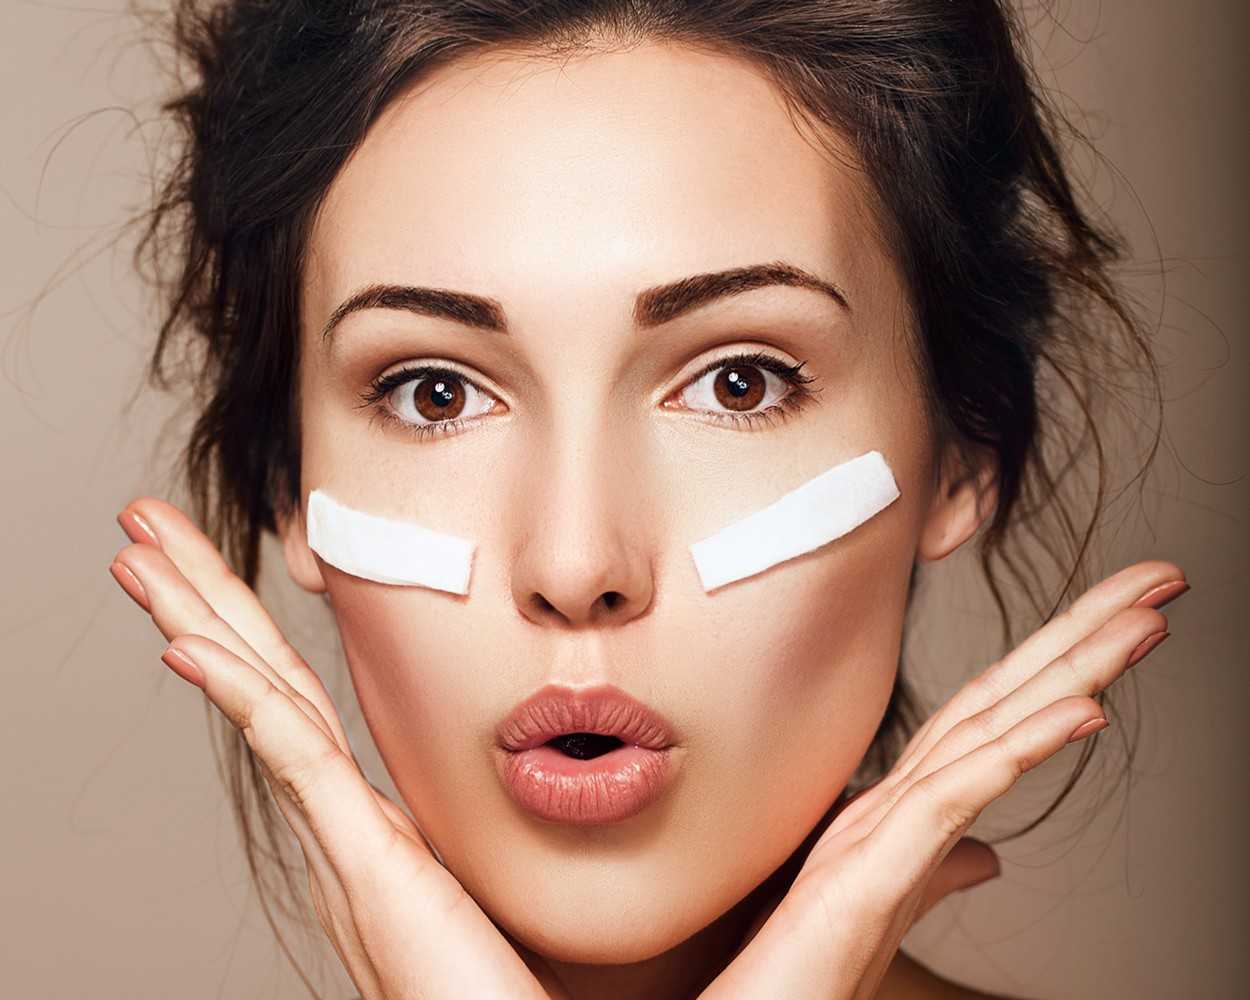 Как убрать морщины вокруг глаз: методы косметологии и пластической хирургии